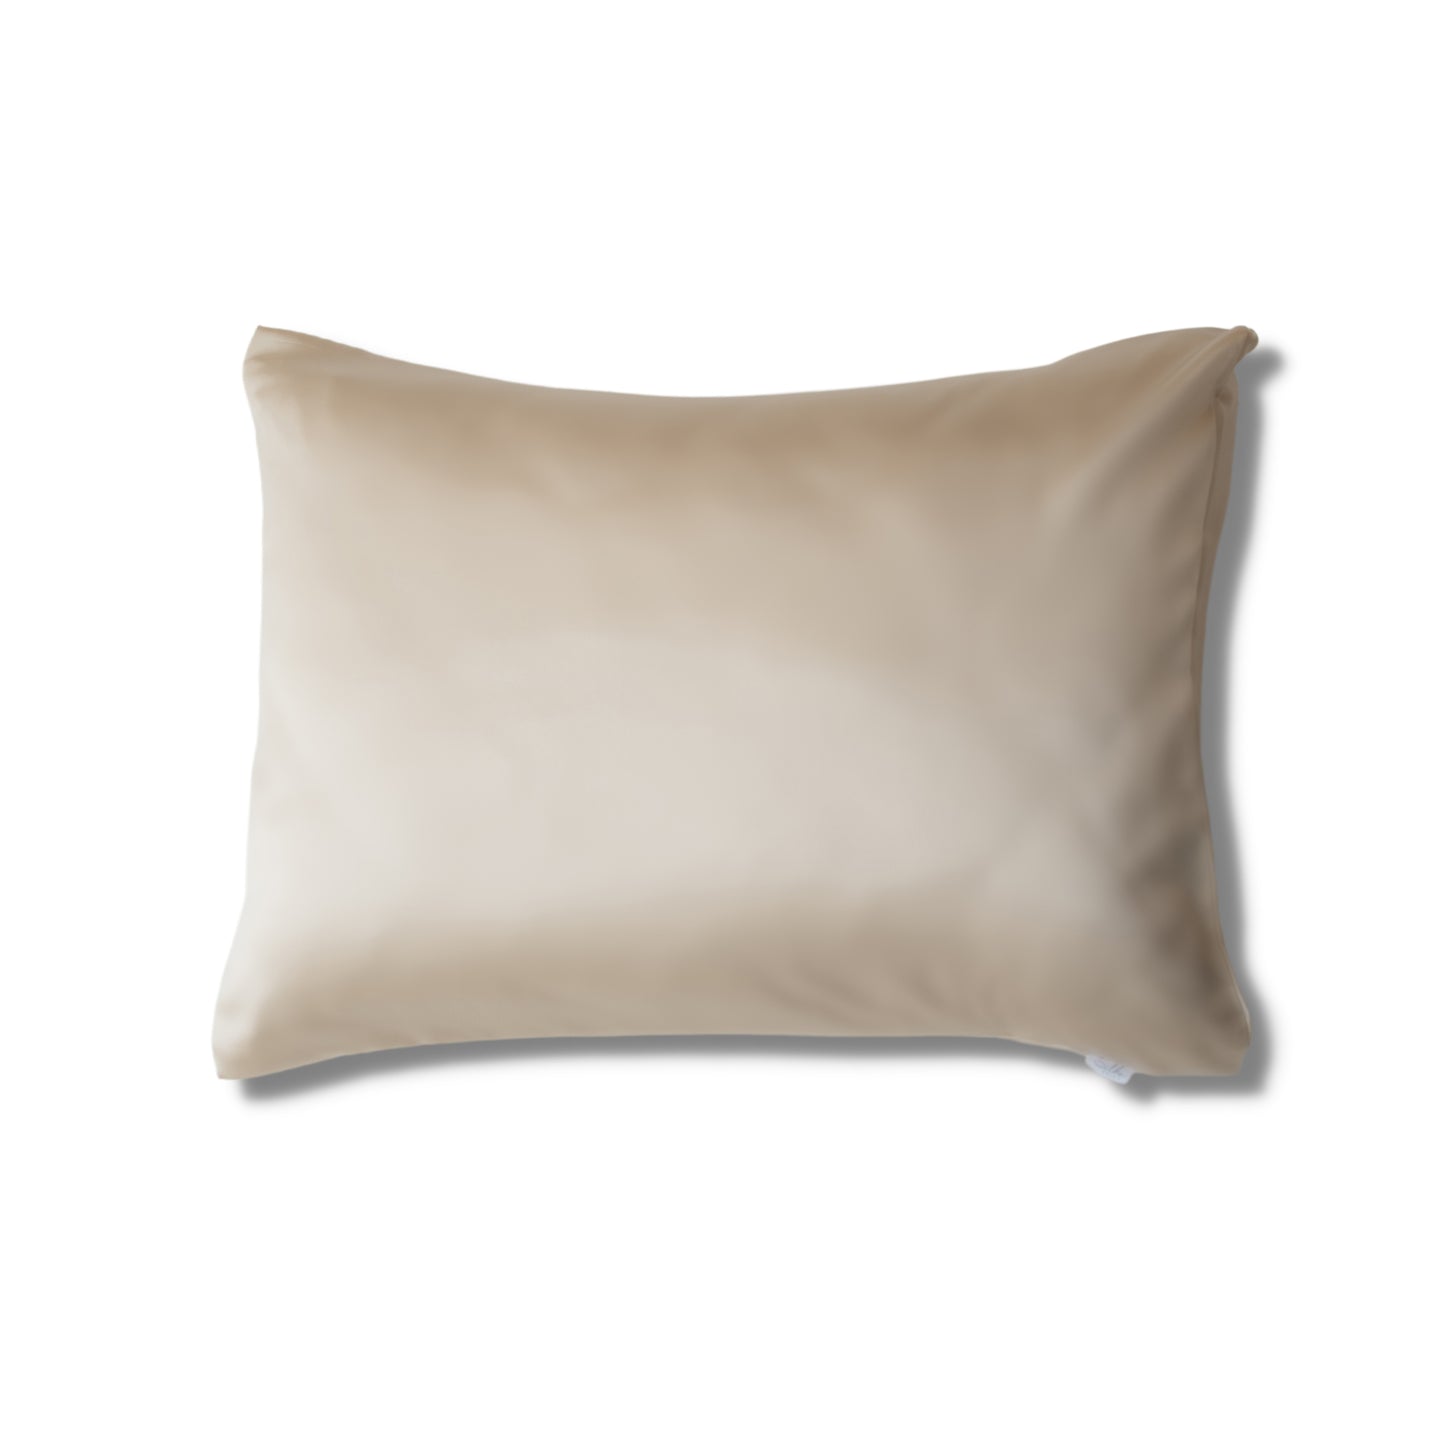 Natūralaus šilko pagalvės užvalkalas 50x70cm - įvairių spalvų